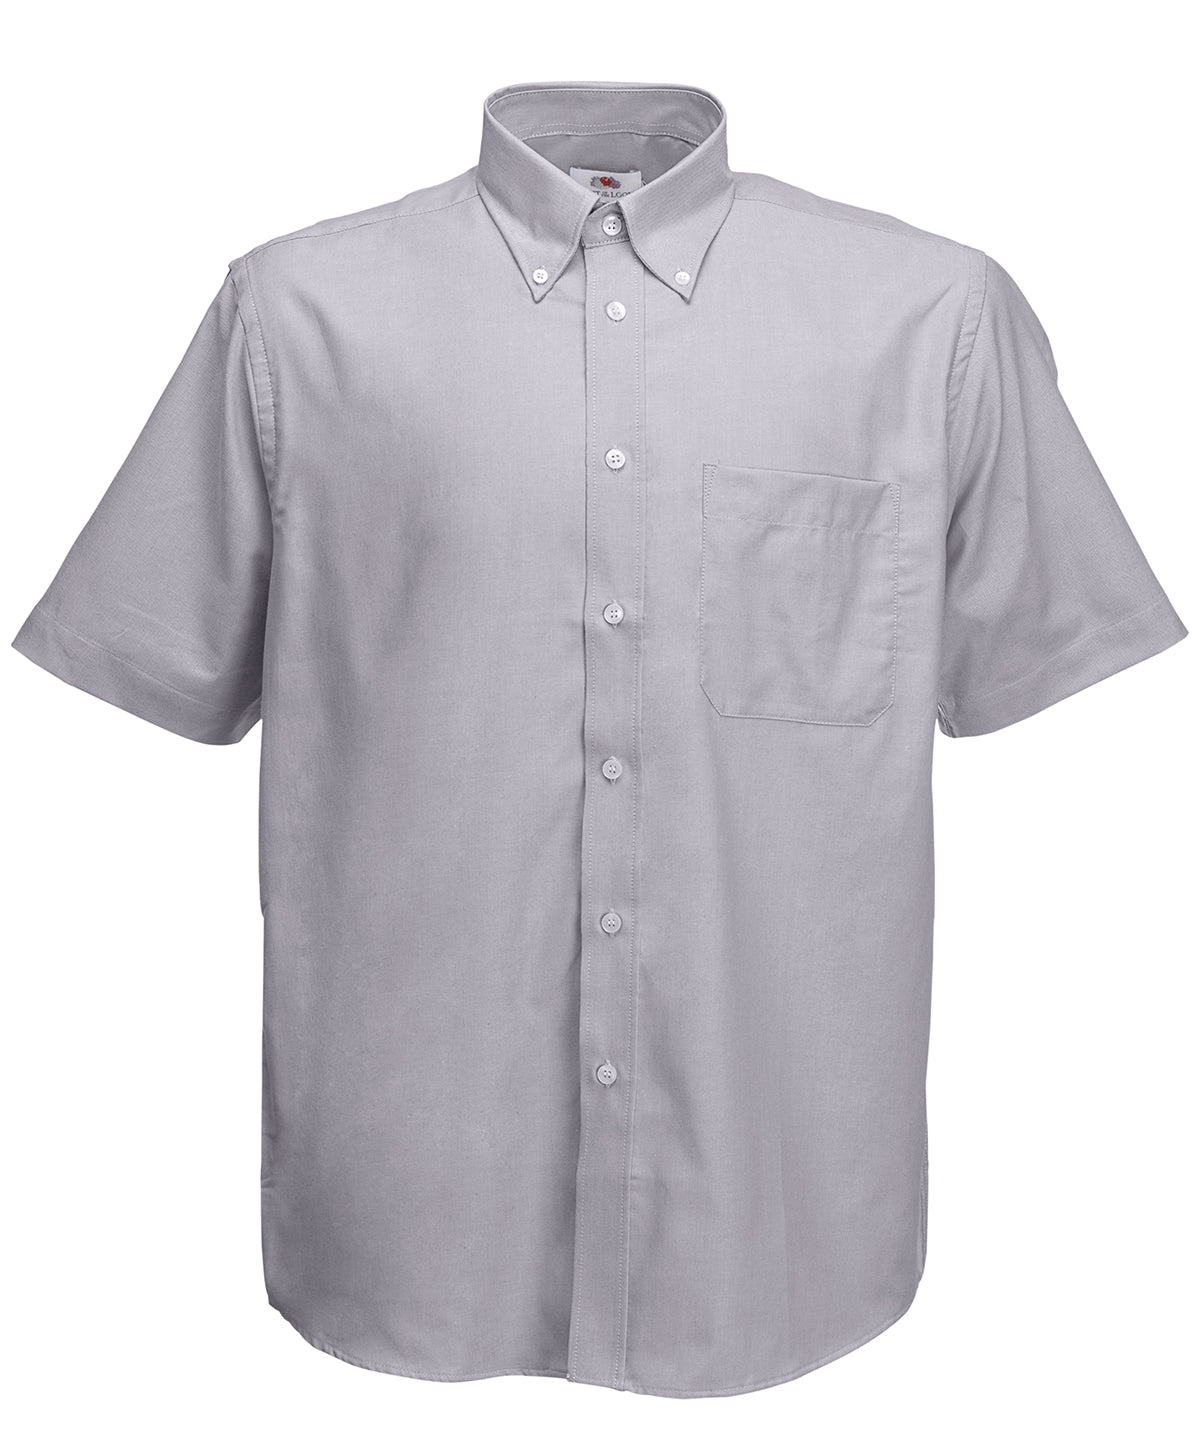 Bolir - Oxford Short Sleeve Shirt